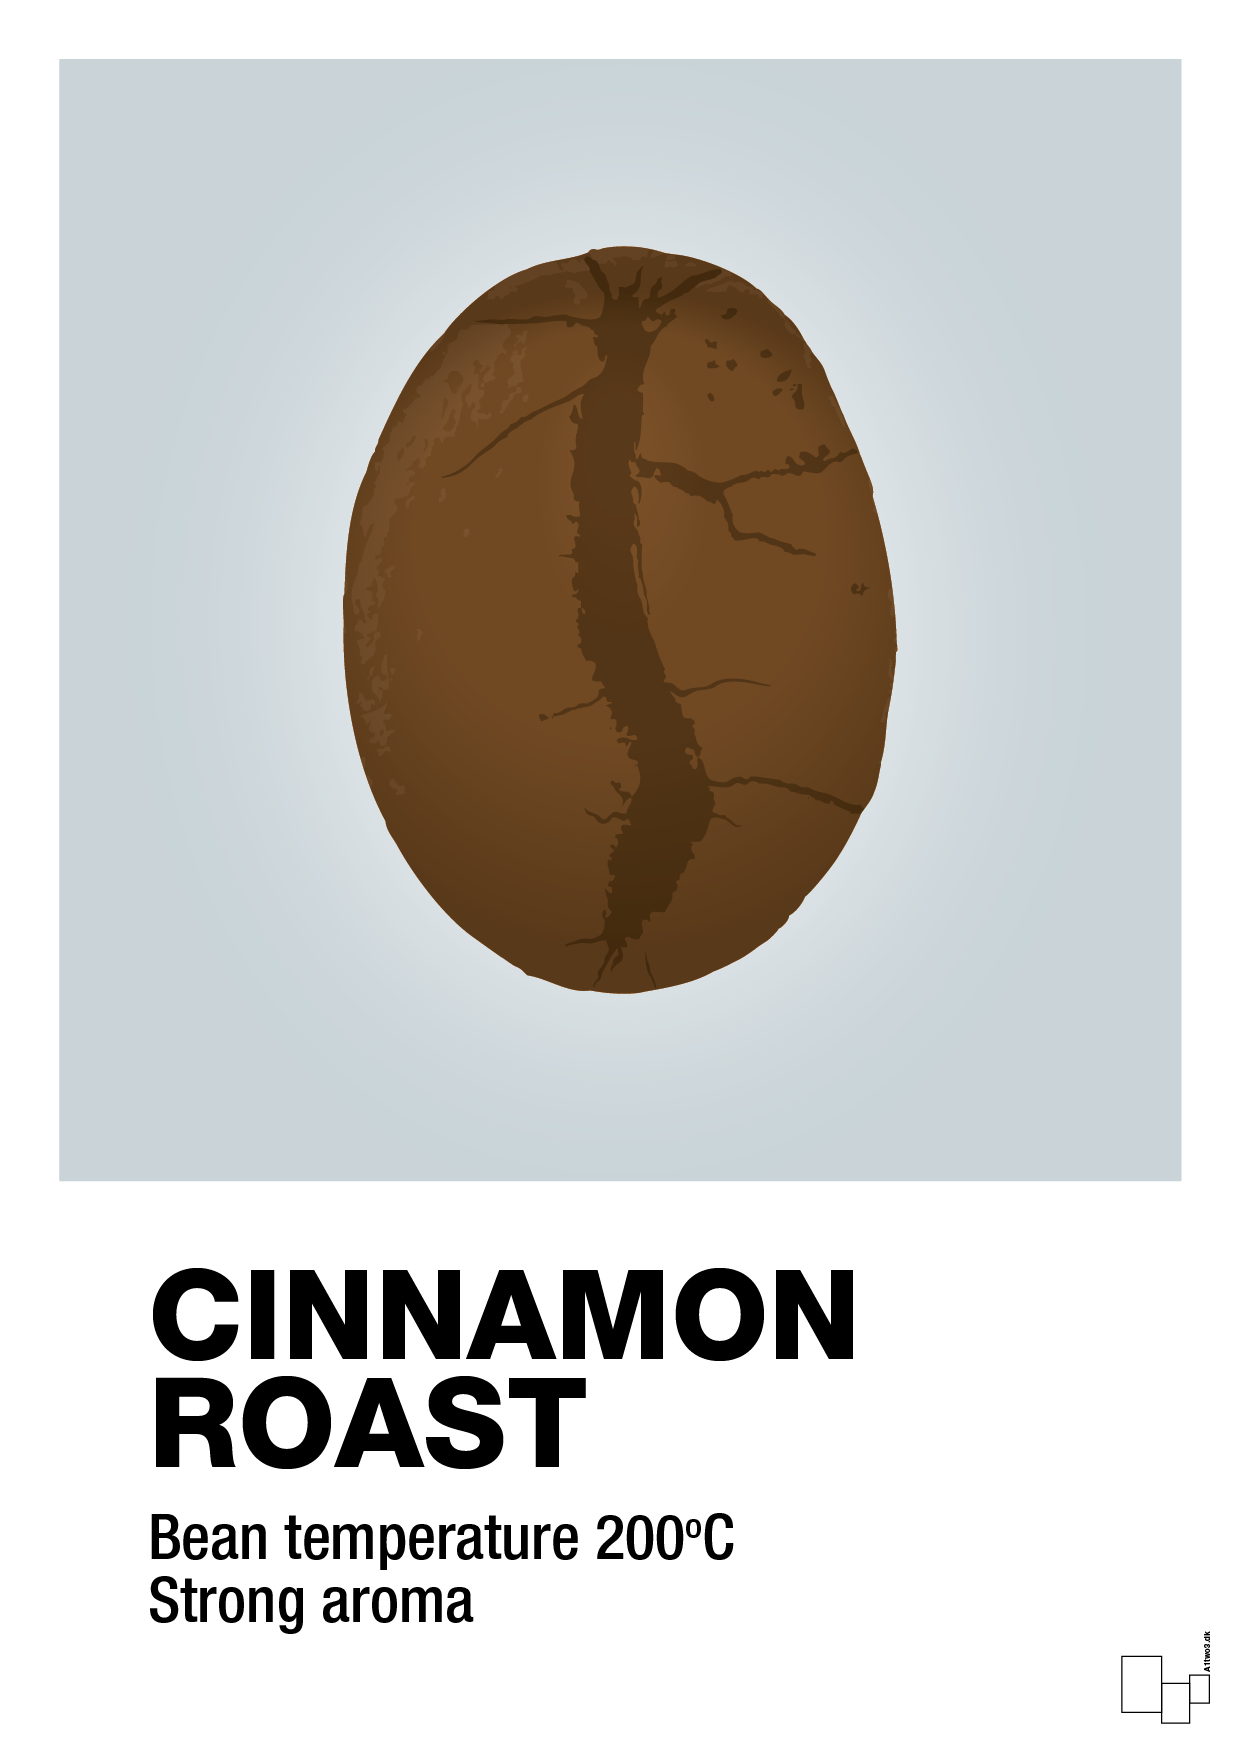 cinnamom roast - Plakat med Mad & Drikke i Light Drizzle